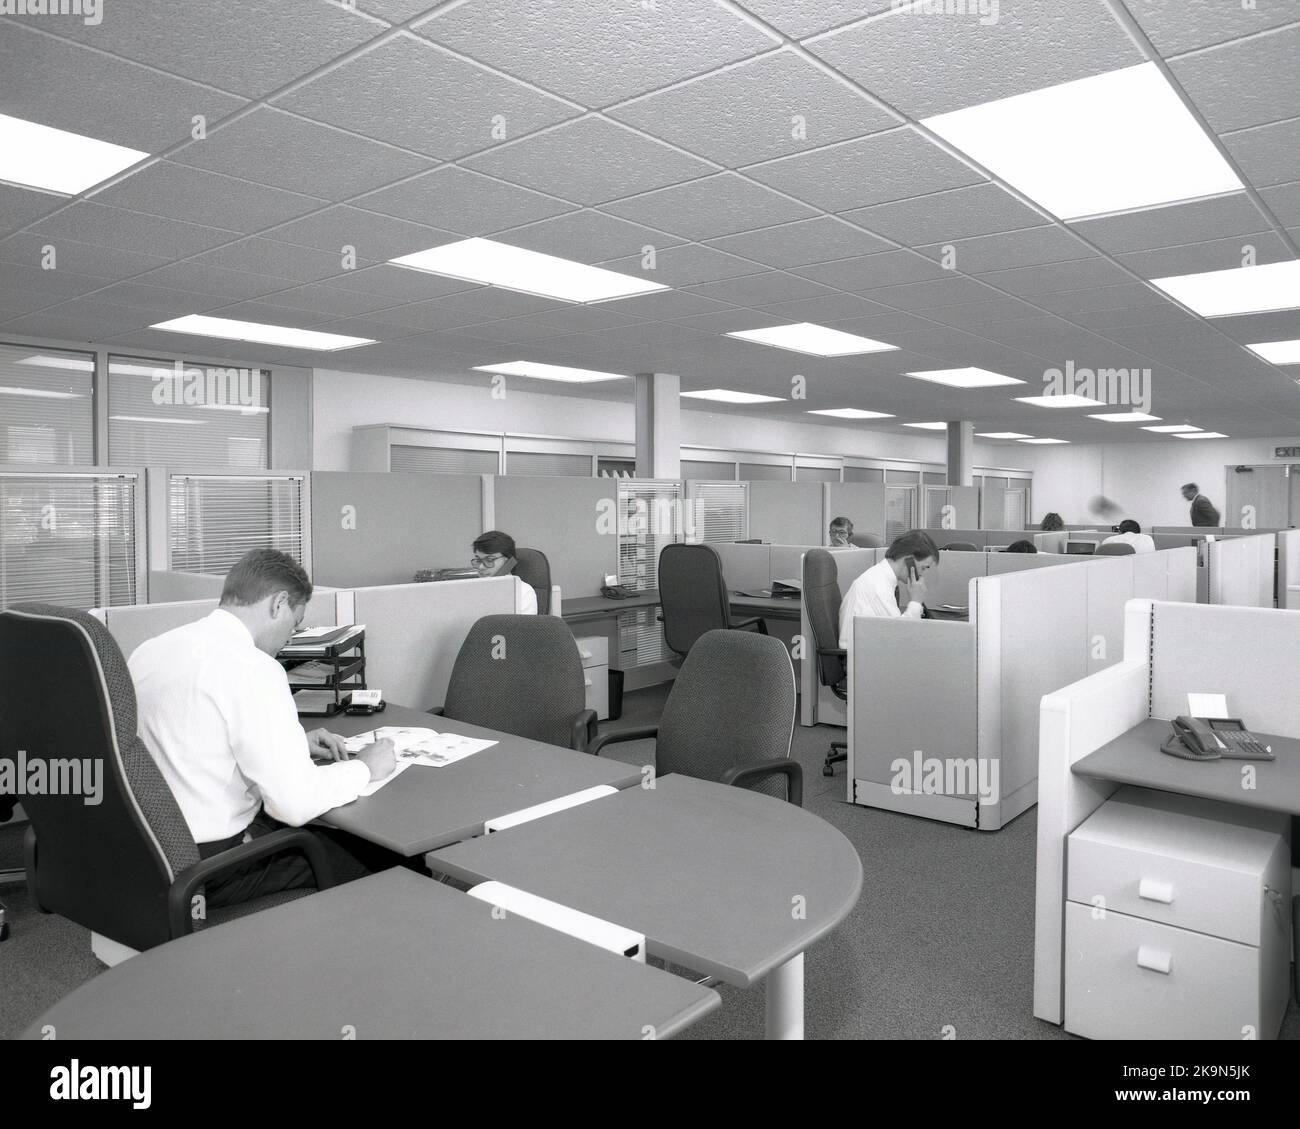 1989, dipendenti storici dell'azienda che lavorano alle scrivanie in cubicoli condivisi, in un ufficio aperto comune in quest'epoca, Inghilterra, Regno Unito, con il manager seduto in una grande scrivania semicircolare, che si affaccia sul pavimento. Foto Stock